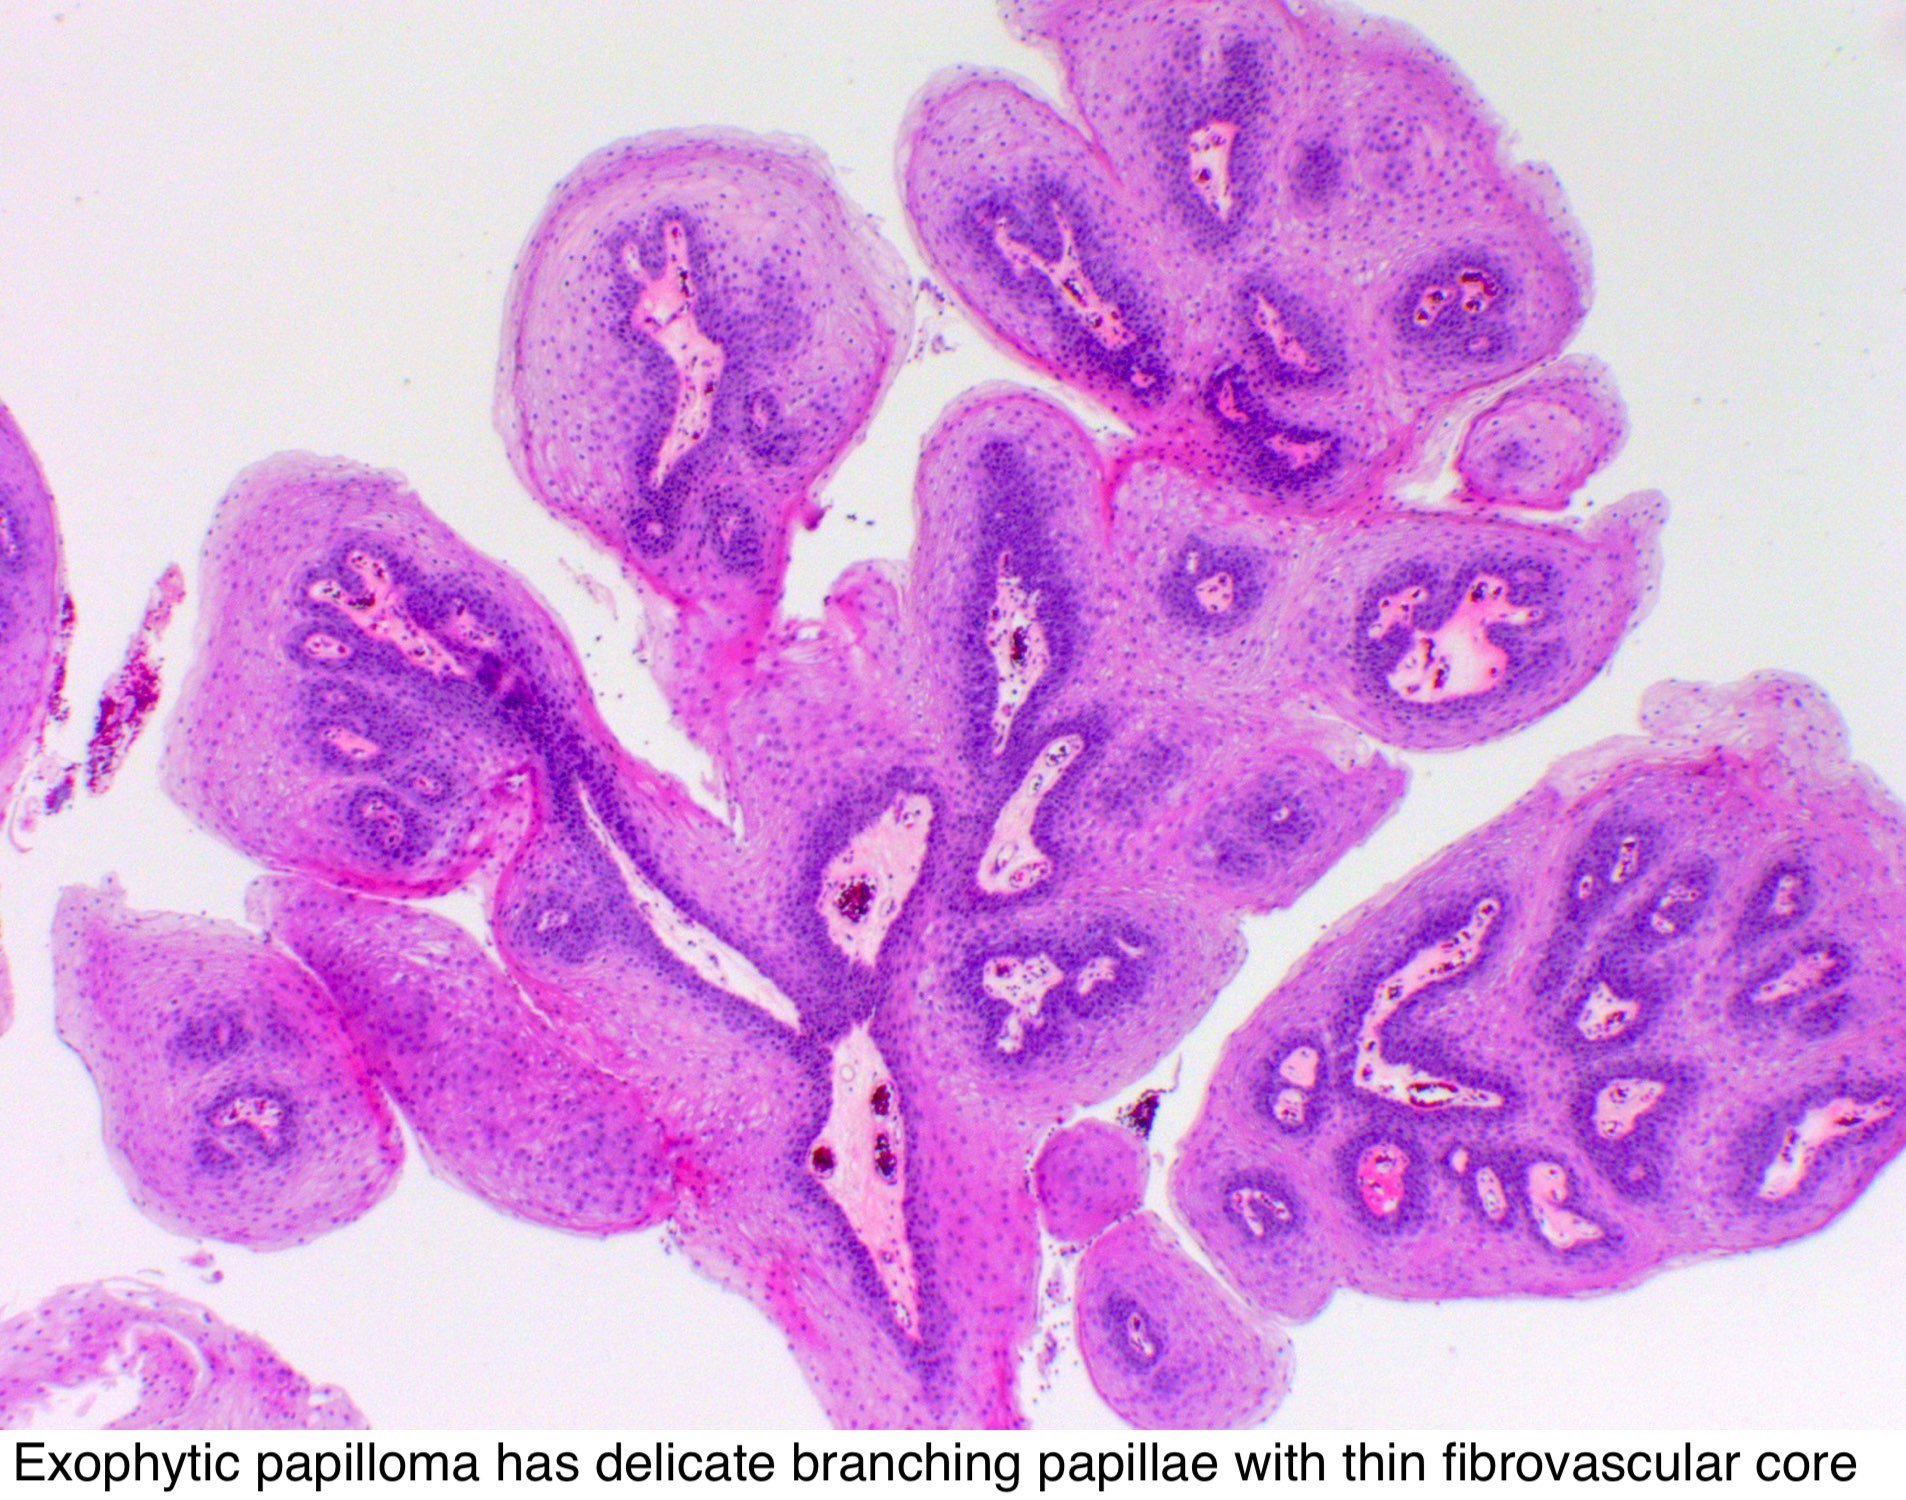 Exophytic papillomas